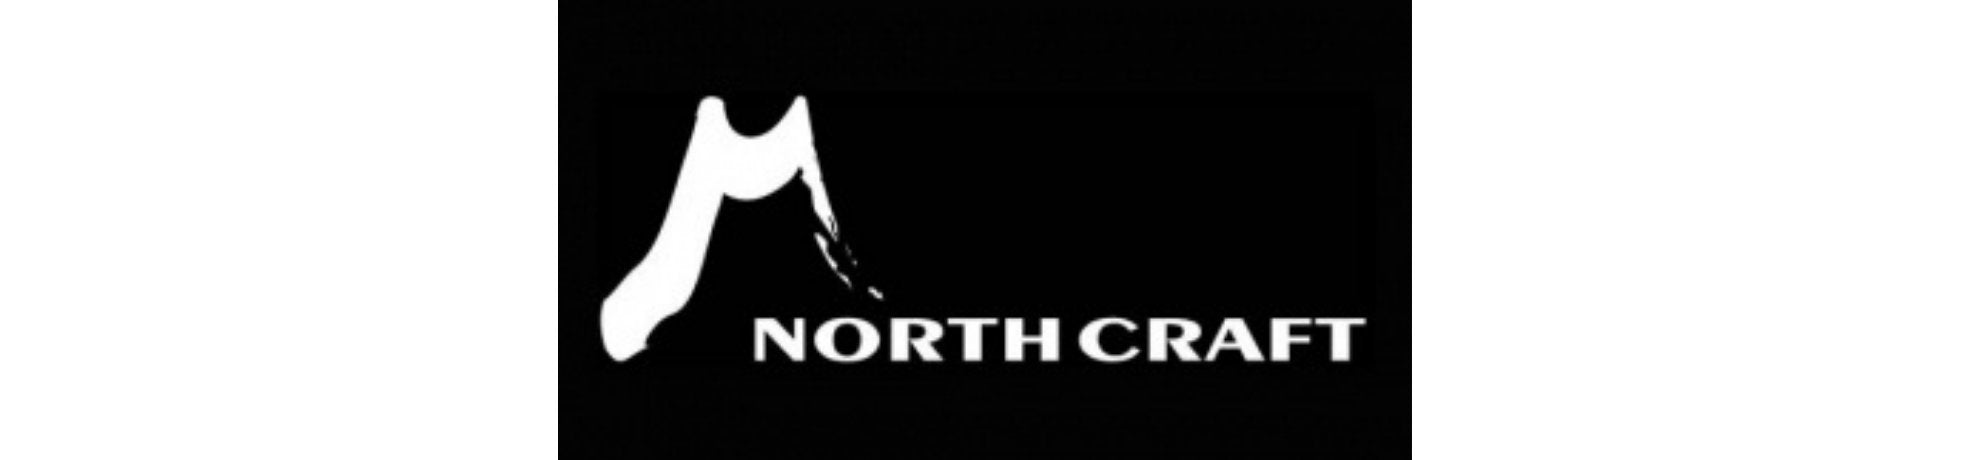 North Craft - fishermanshub